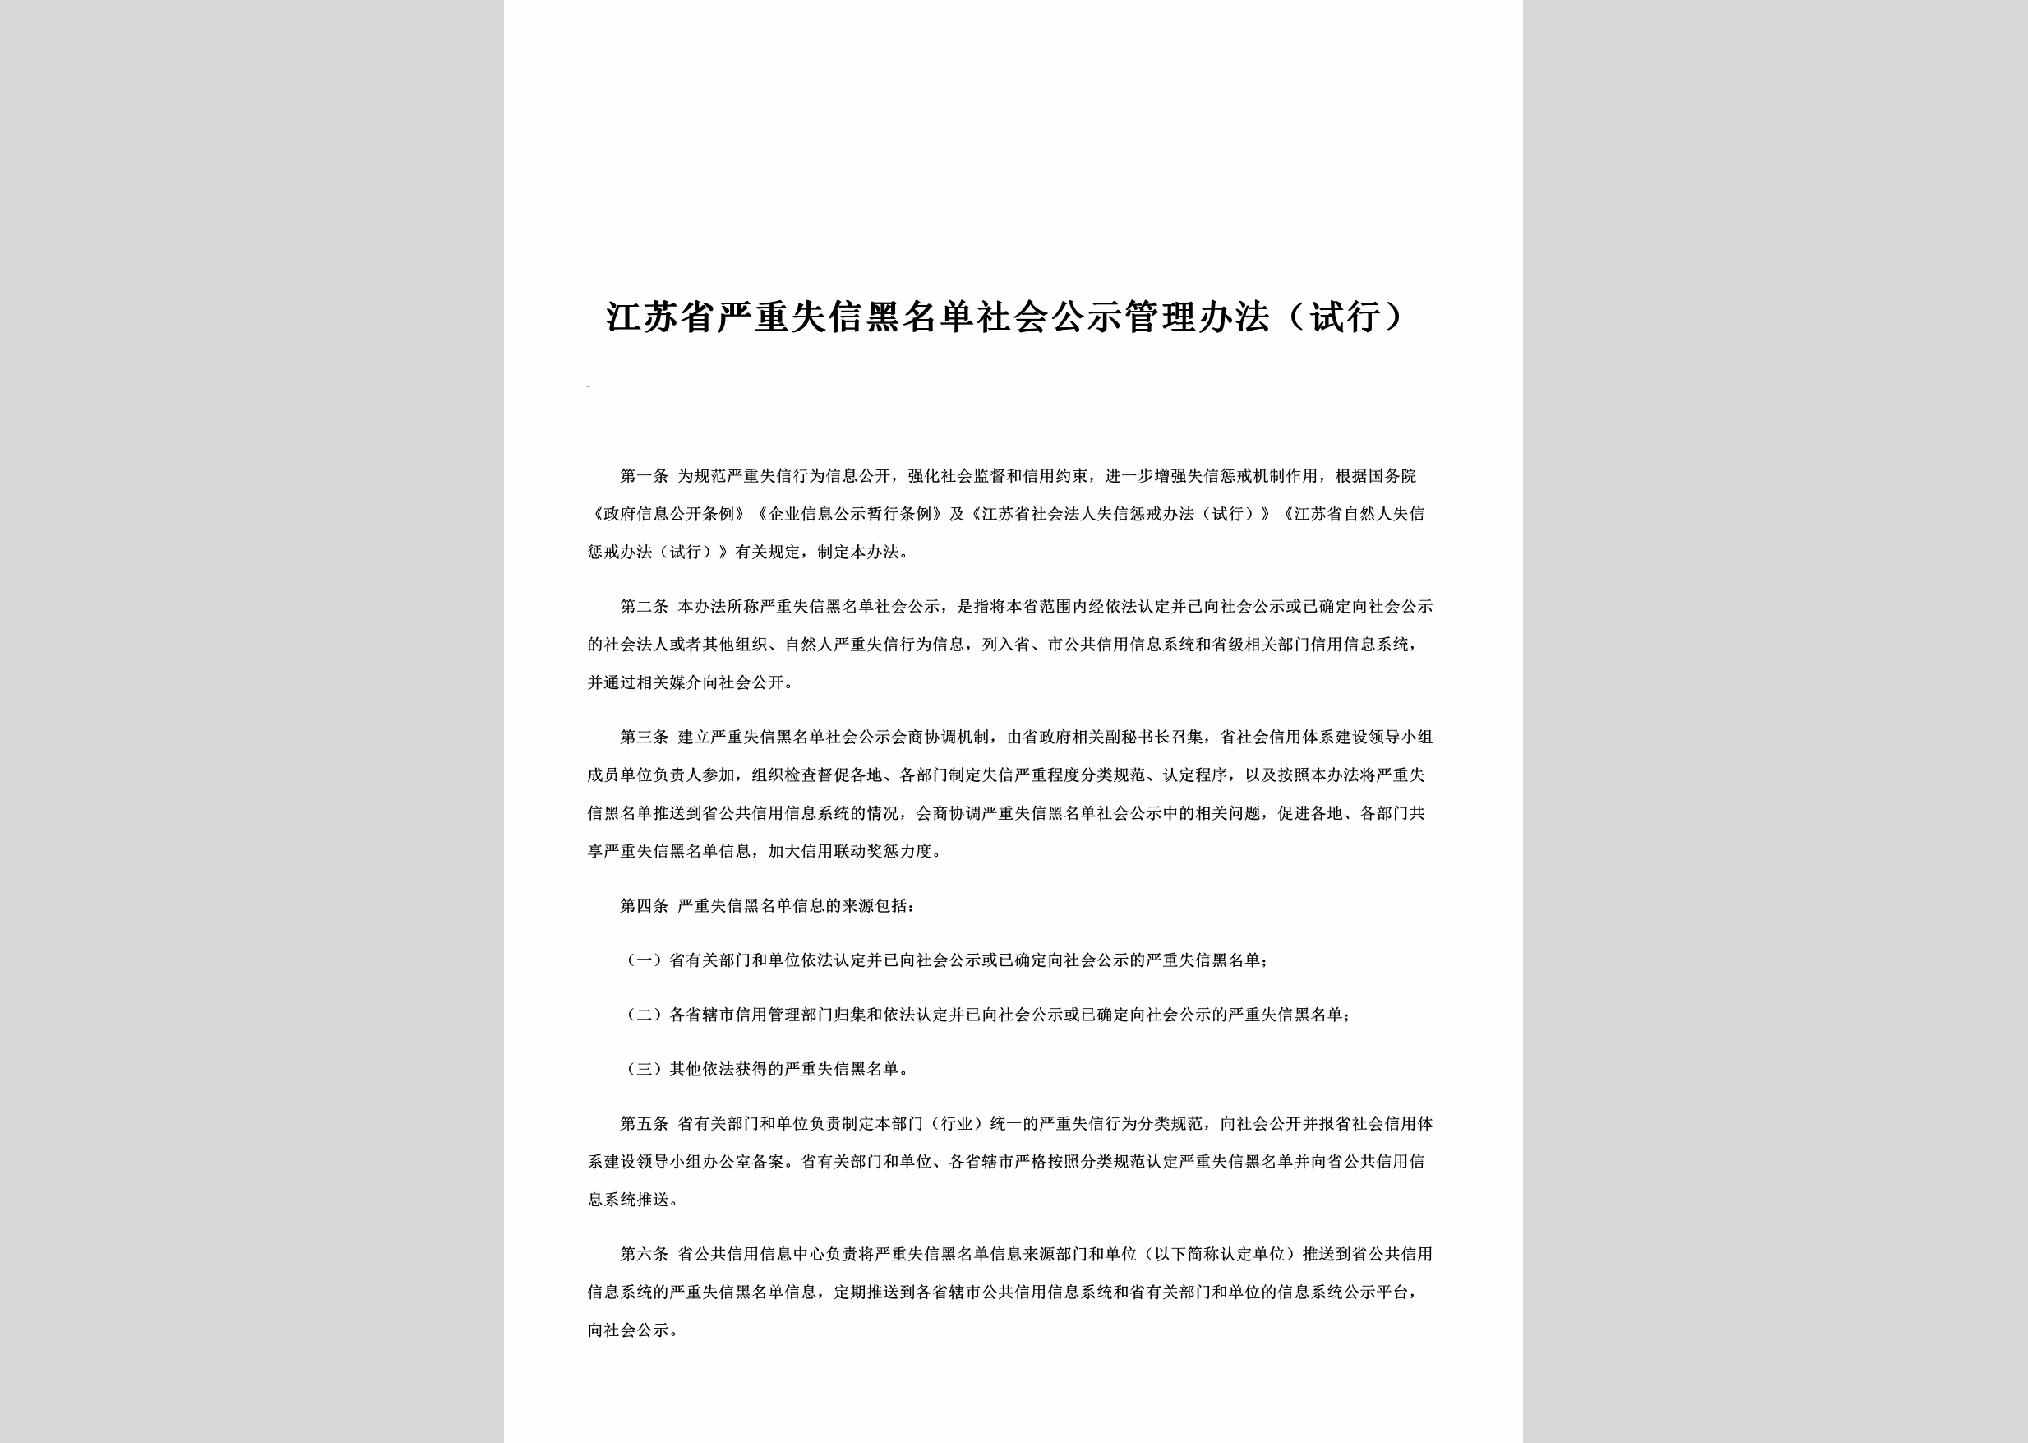 JS-YZSYGLBF-2015：江苏省严重失信黑名单社会公示管理办法（试行）